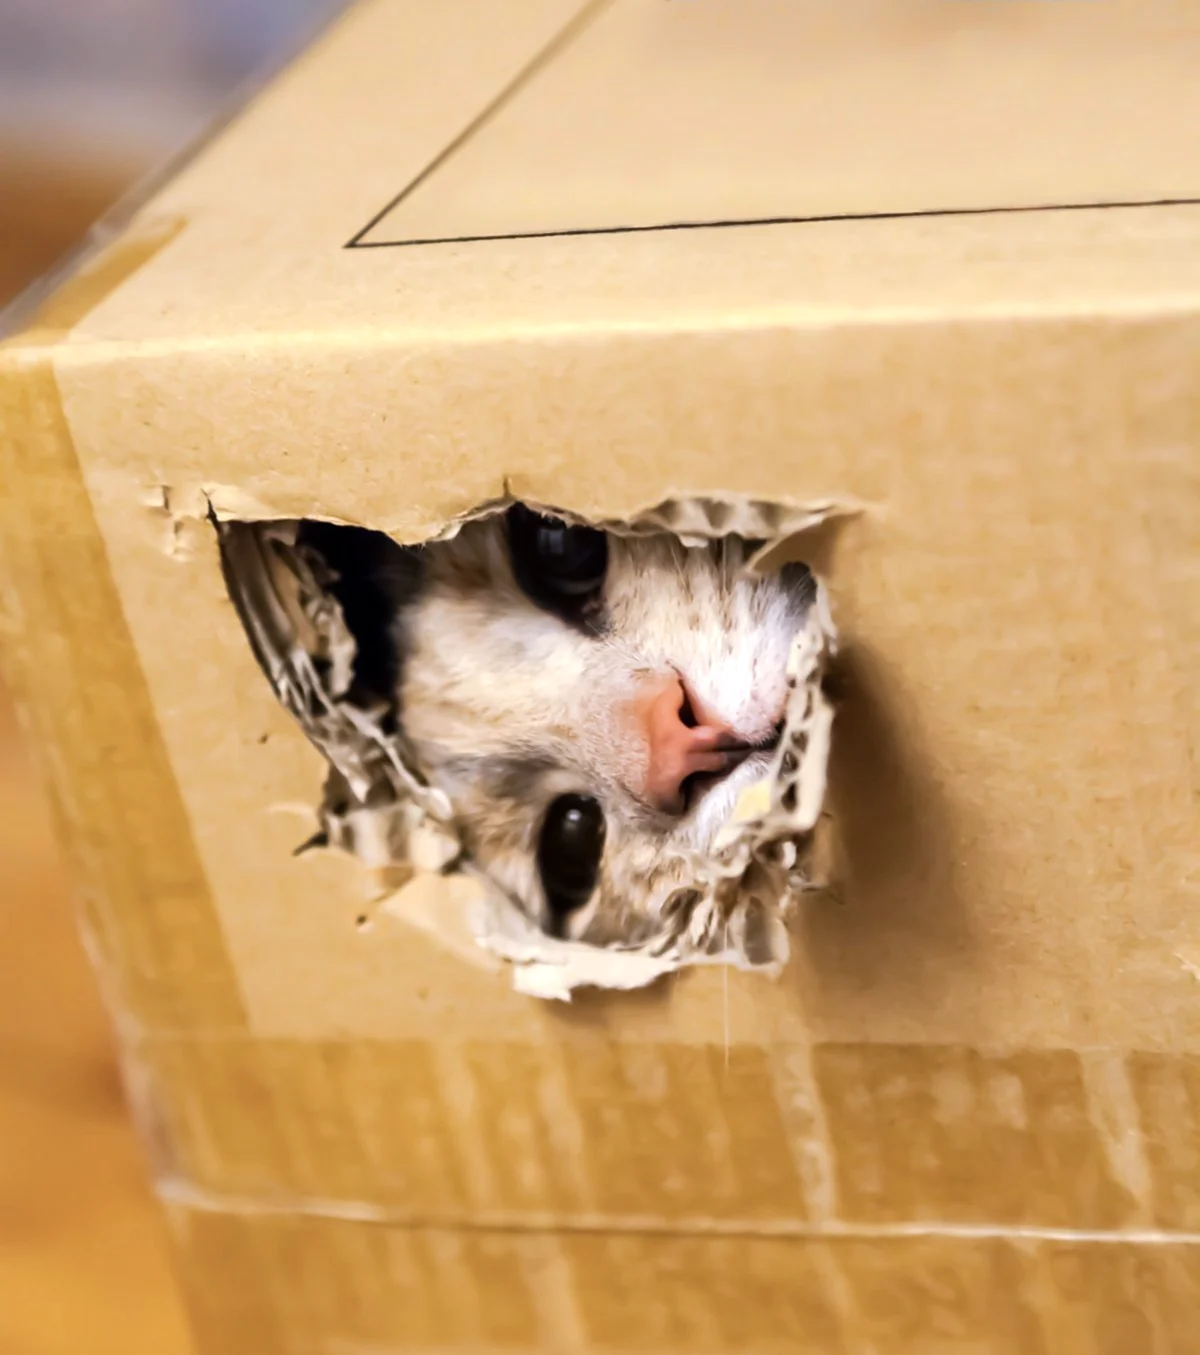 Кот в коробке. Красивое животное